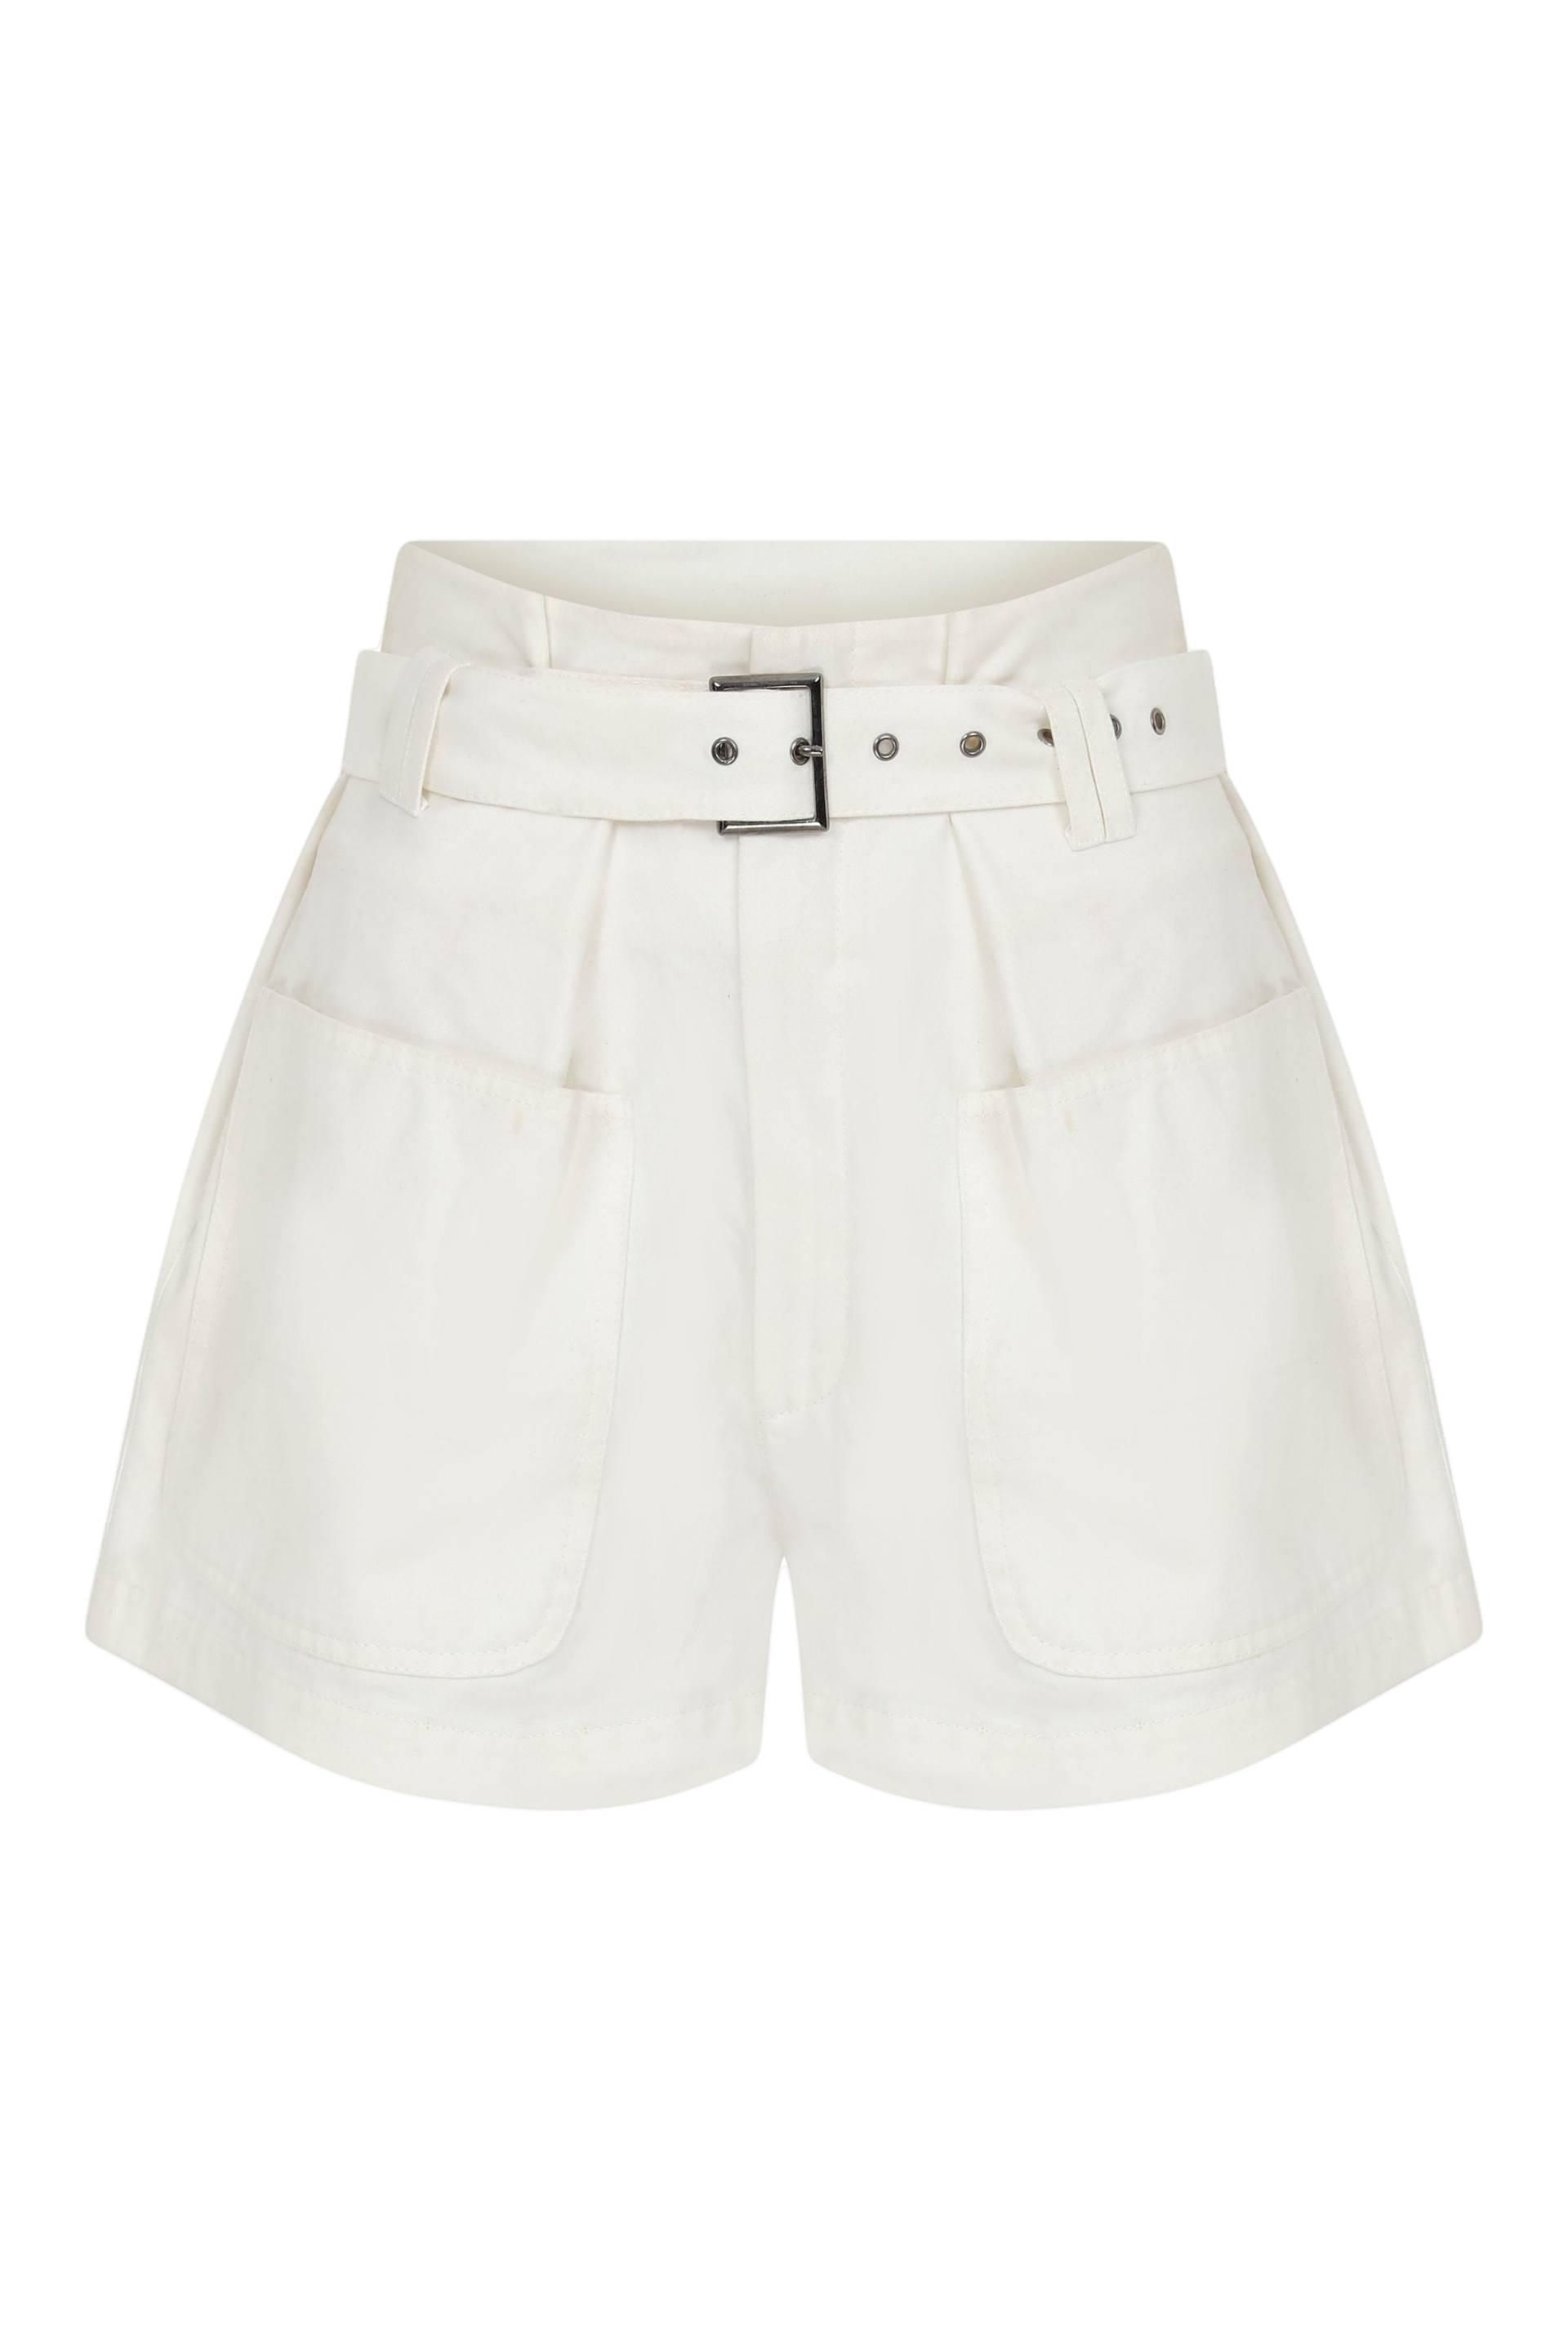 Louis White Cotton Shorts von Nazli Ceren